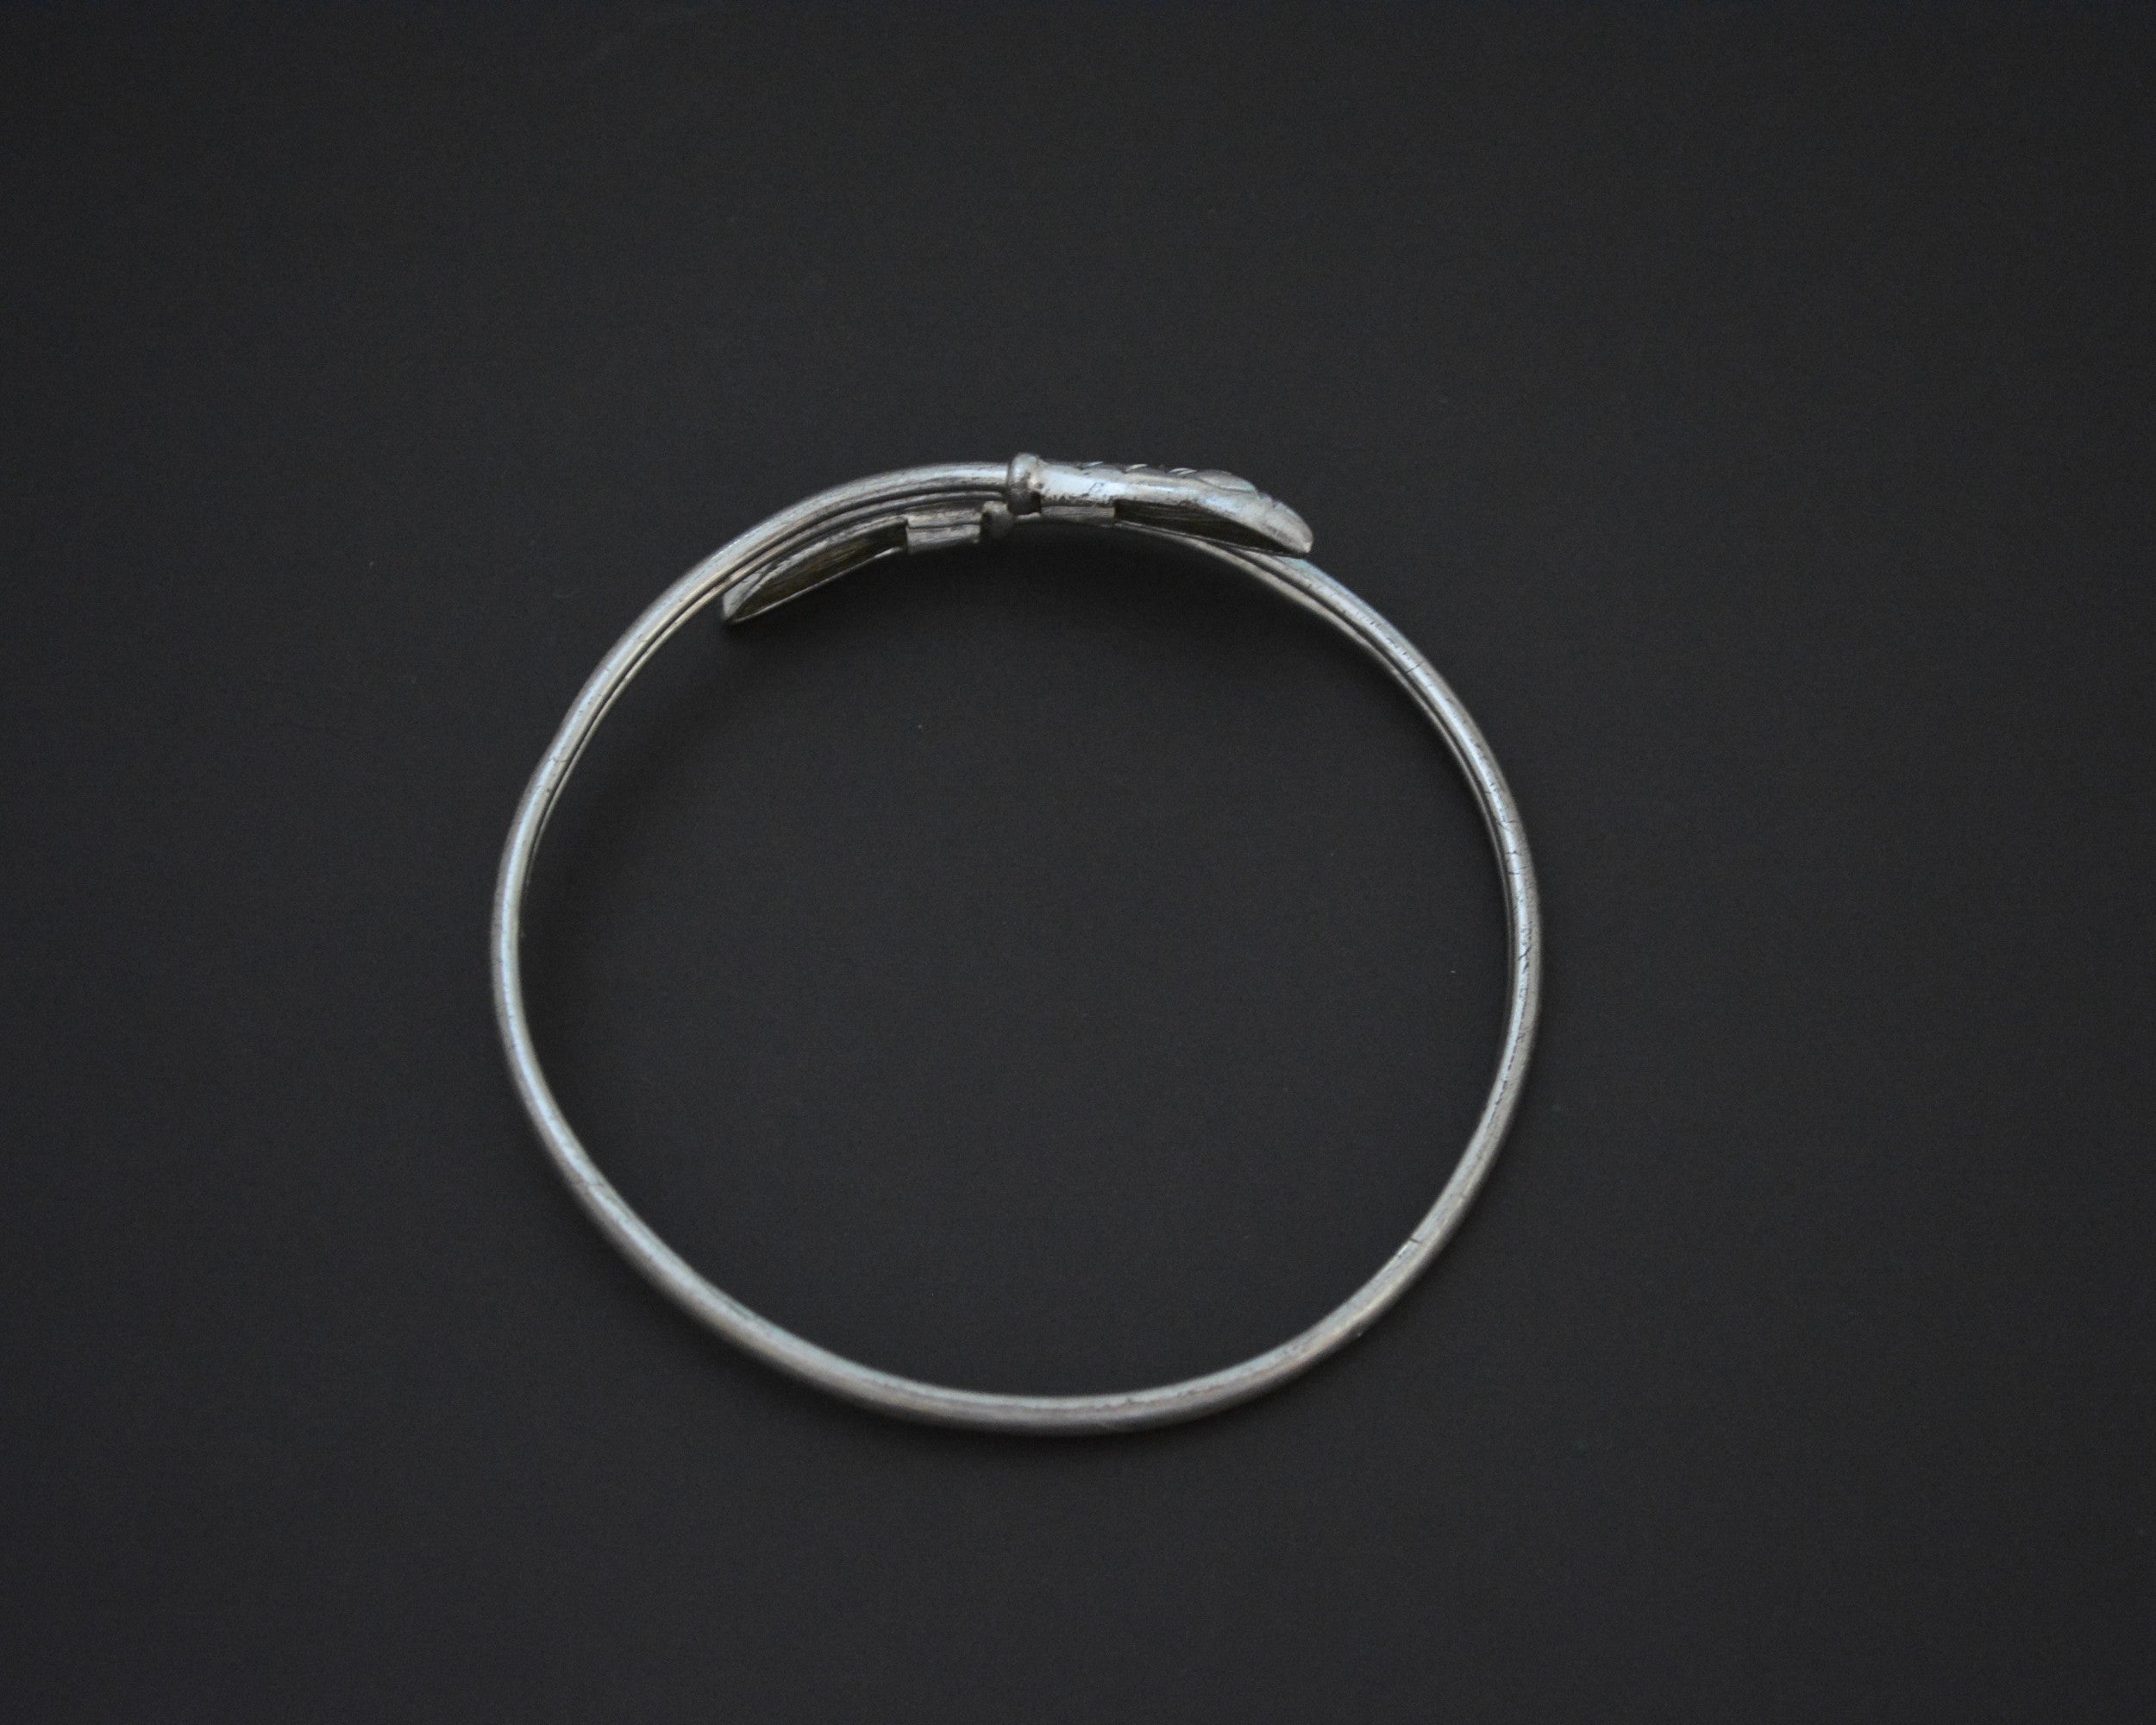 Reserved for L. - Vintage Silver Snake Bracelet - Adjustable - Snake Jewelry